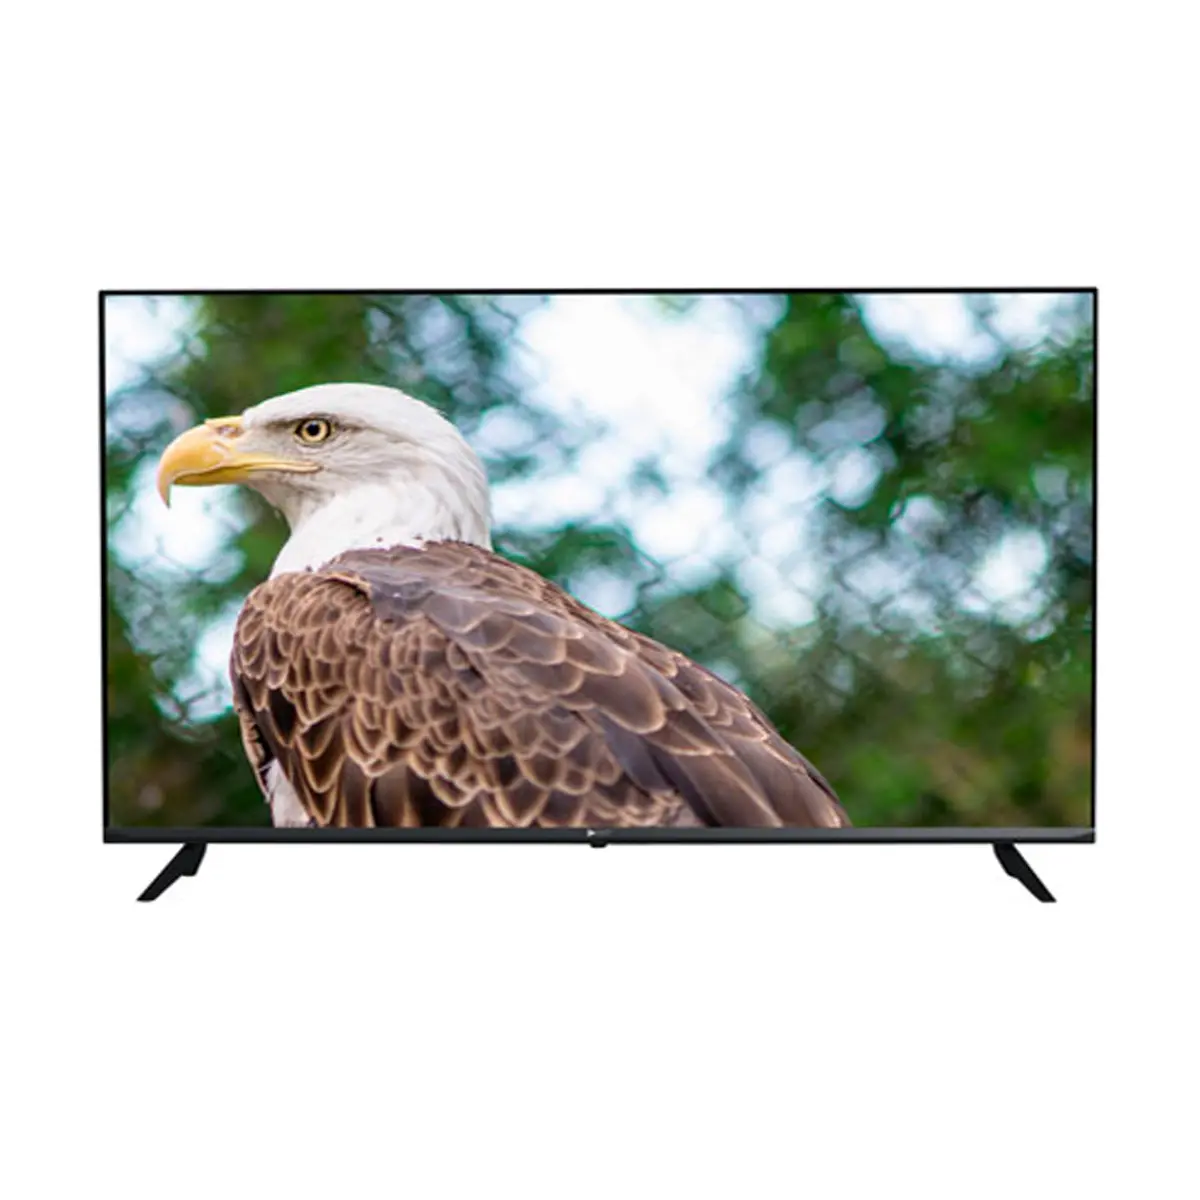 Meilleure Smart TV 65 pouces ANDROID 11 bonne qualité et image claire image lumineuse et détaillée